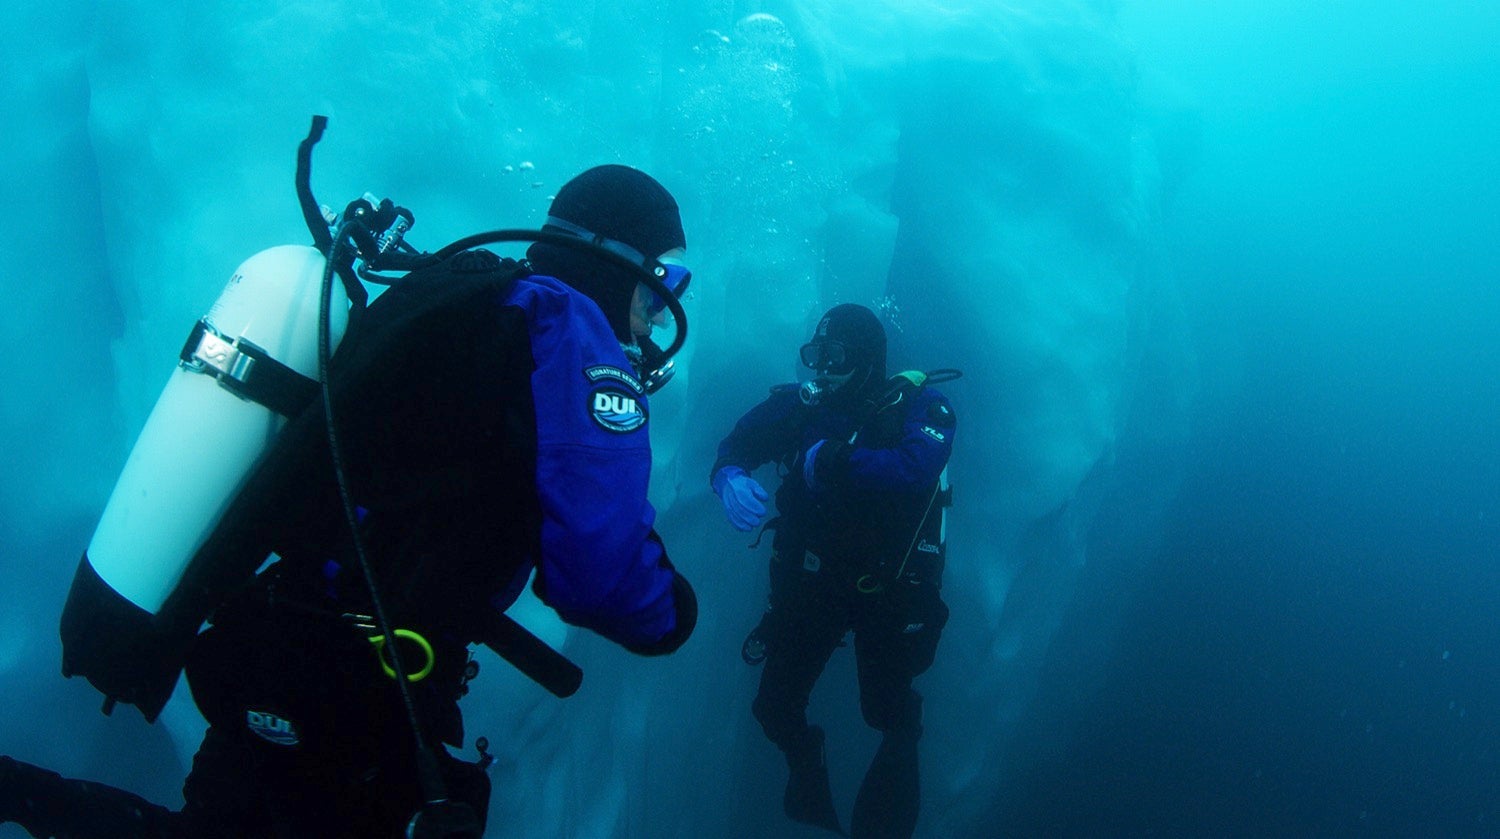 dua orang dengan perlengkapan selam di bawah air dekat gunung es